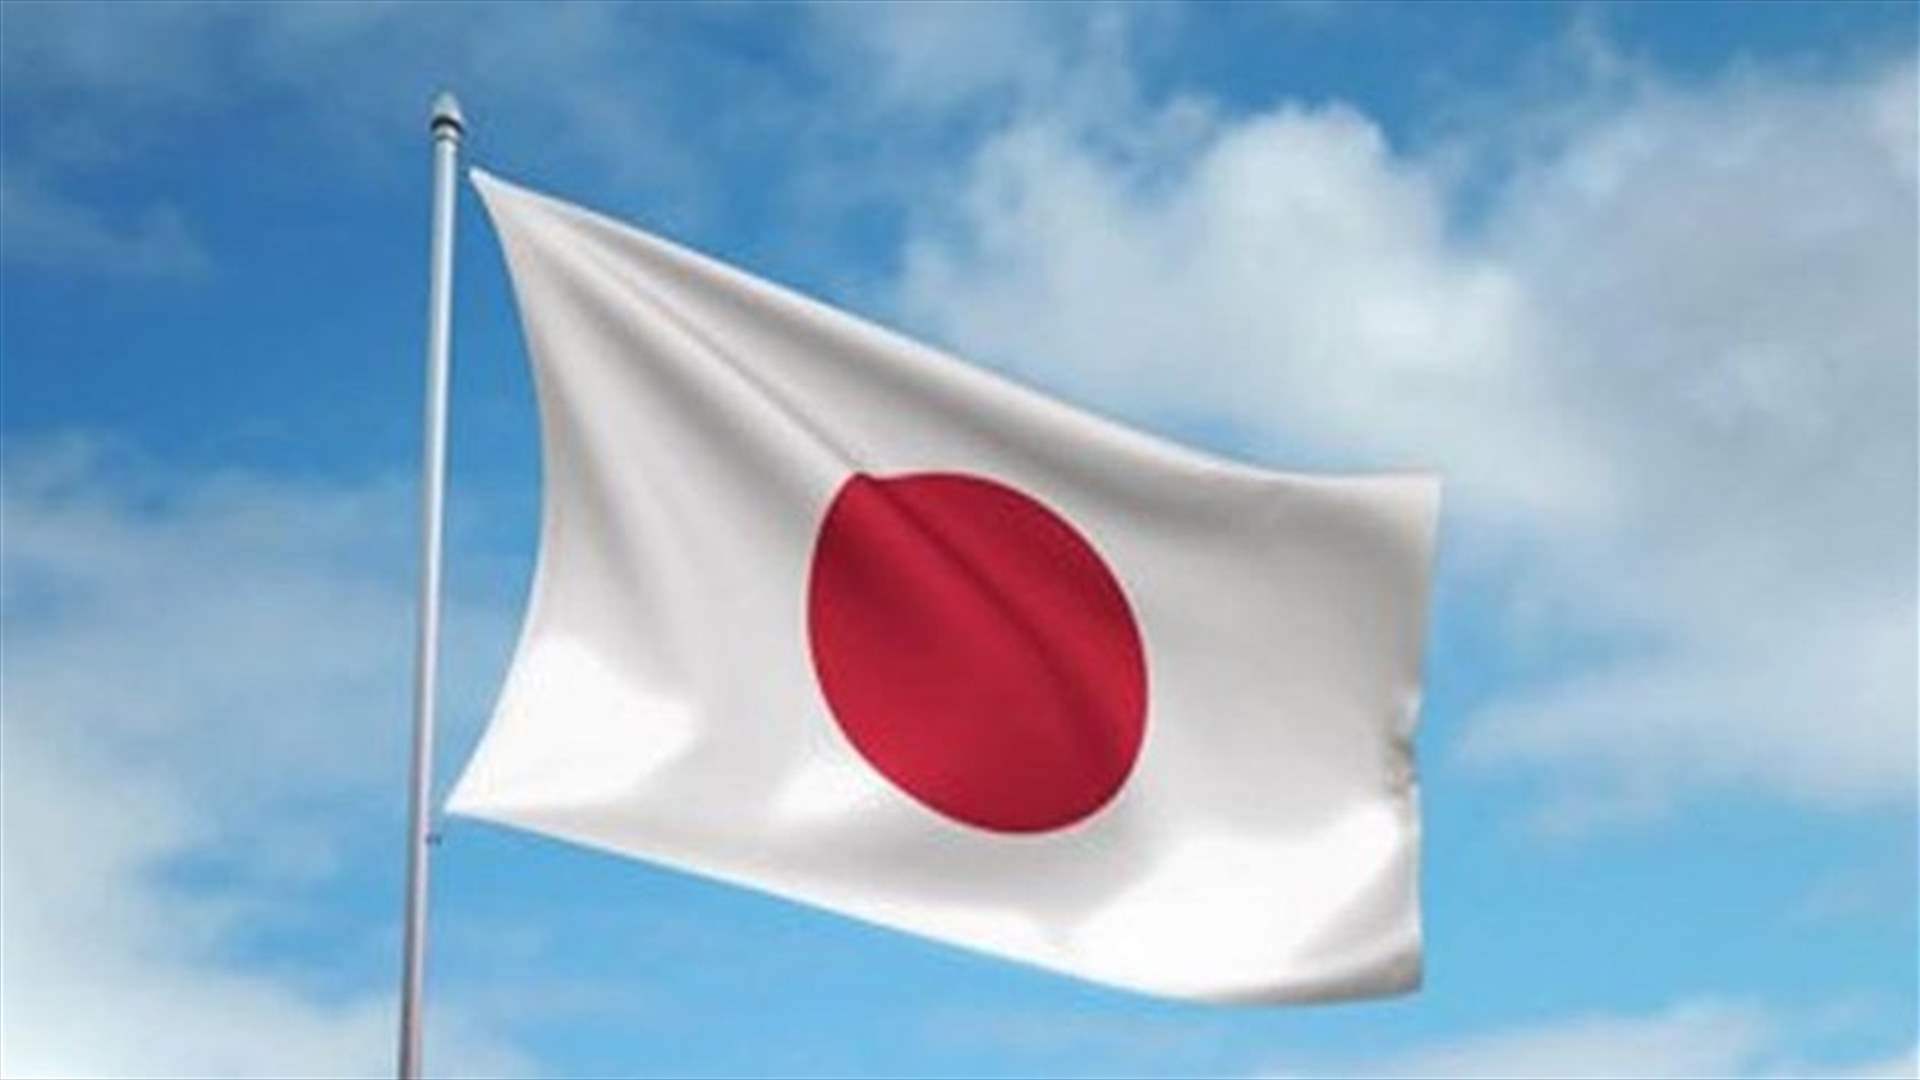 اليابان تندد بقوة بالهجوم الإيراني على إسرائيل وتصفه بأنه &quot;تصعيد&quot;